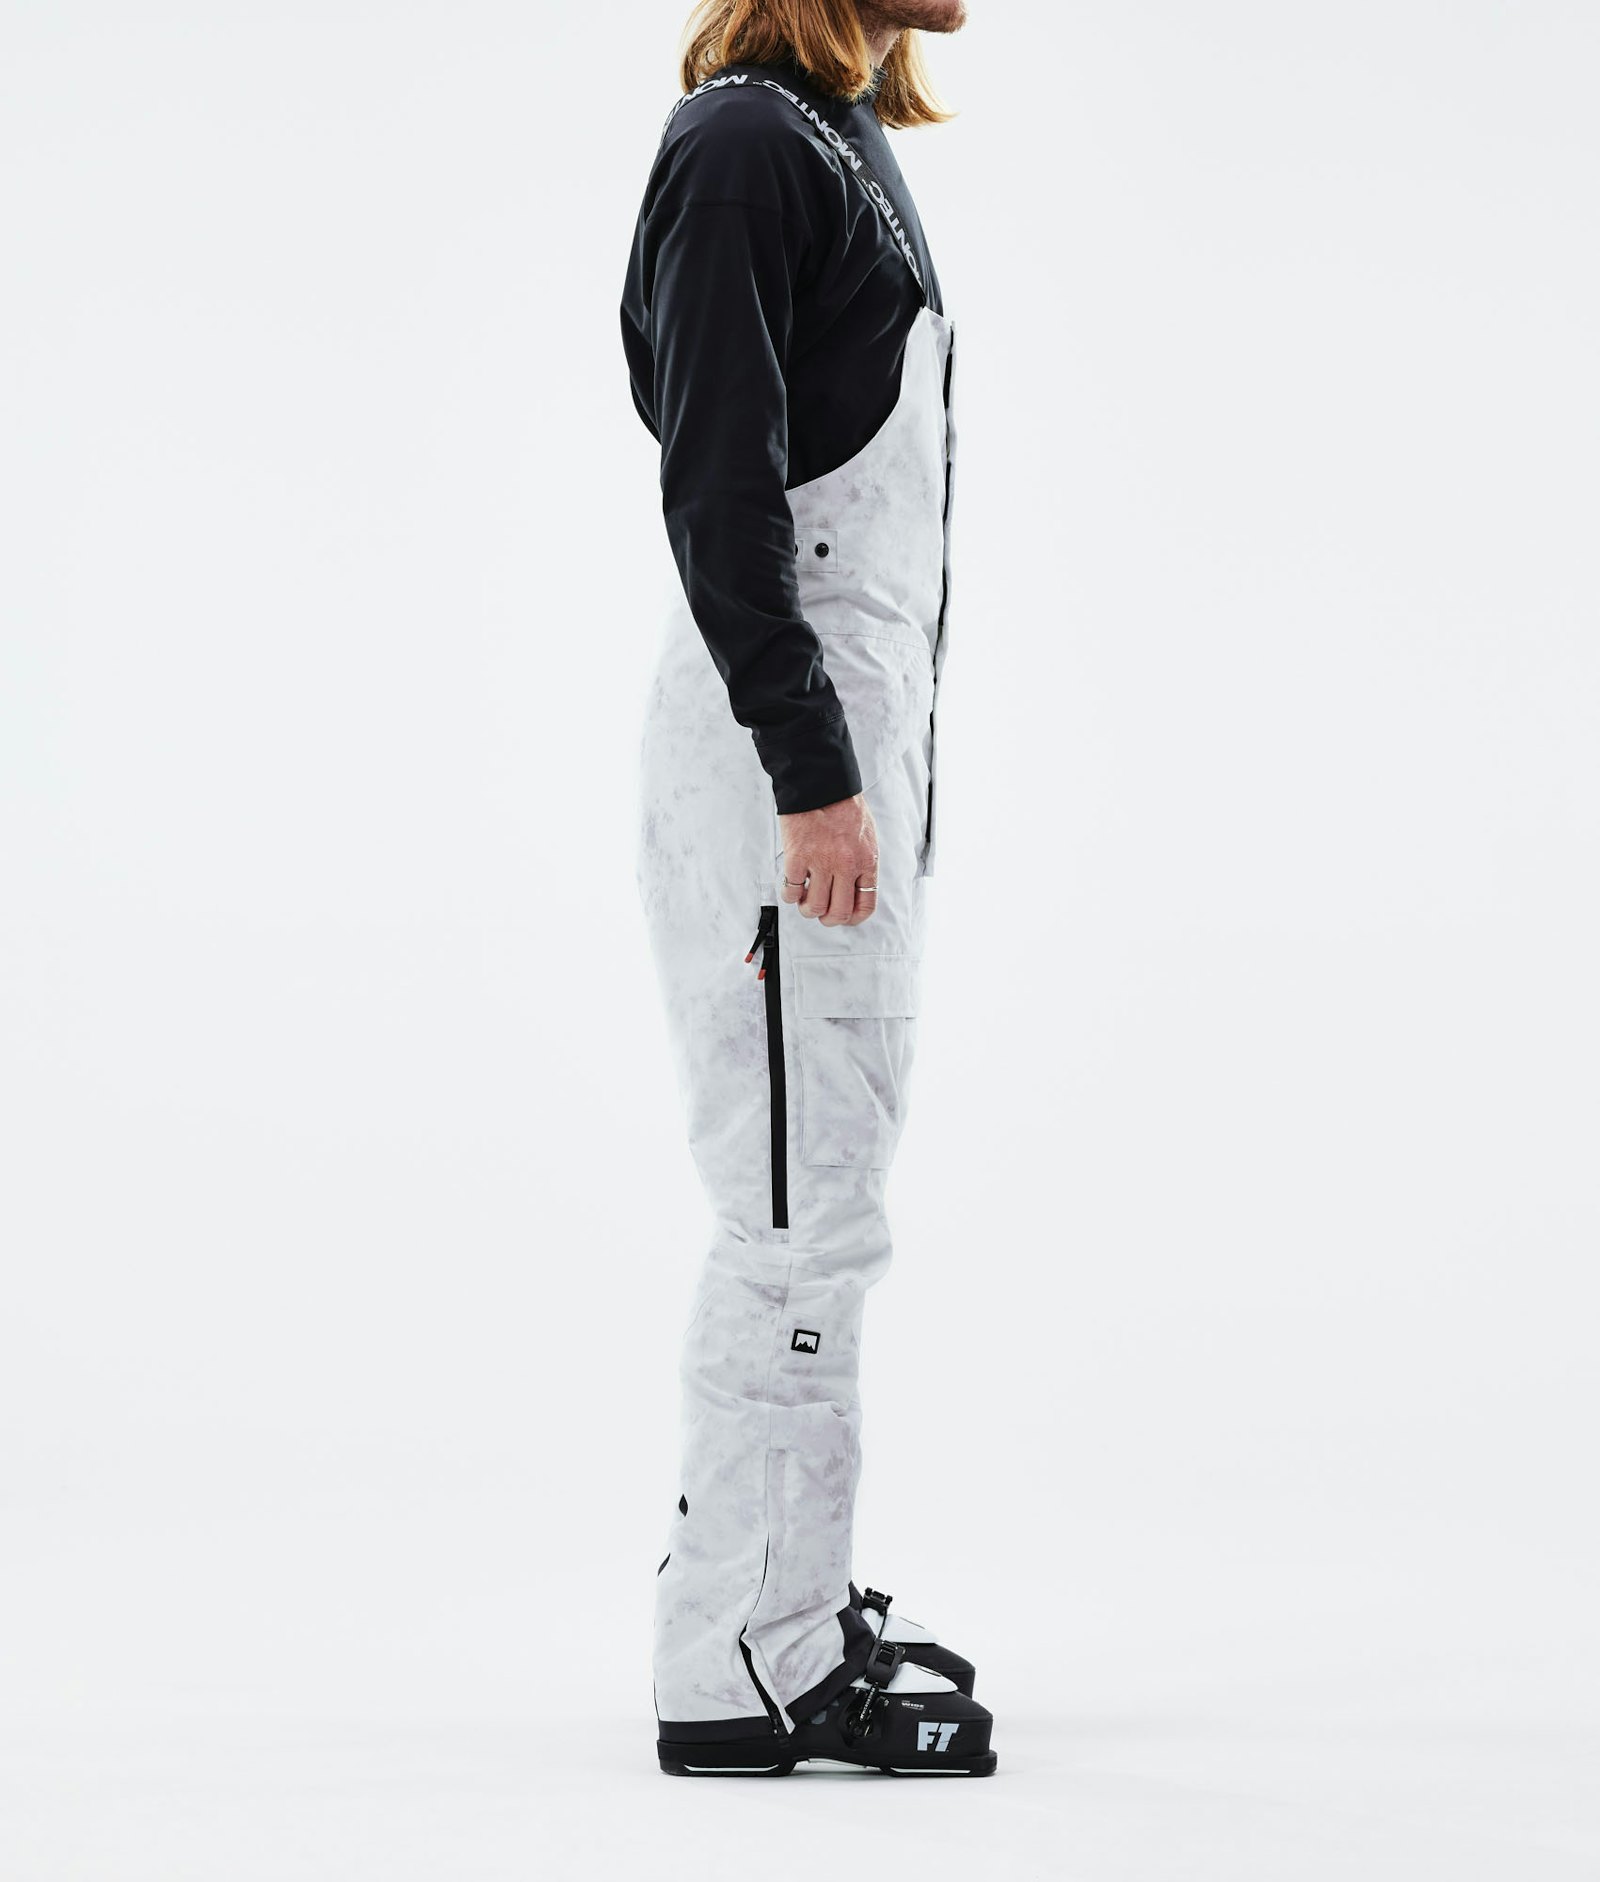 Fawk 2021 Pantalon de Ski Homme White Tiedye